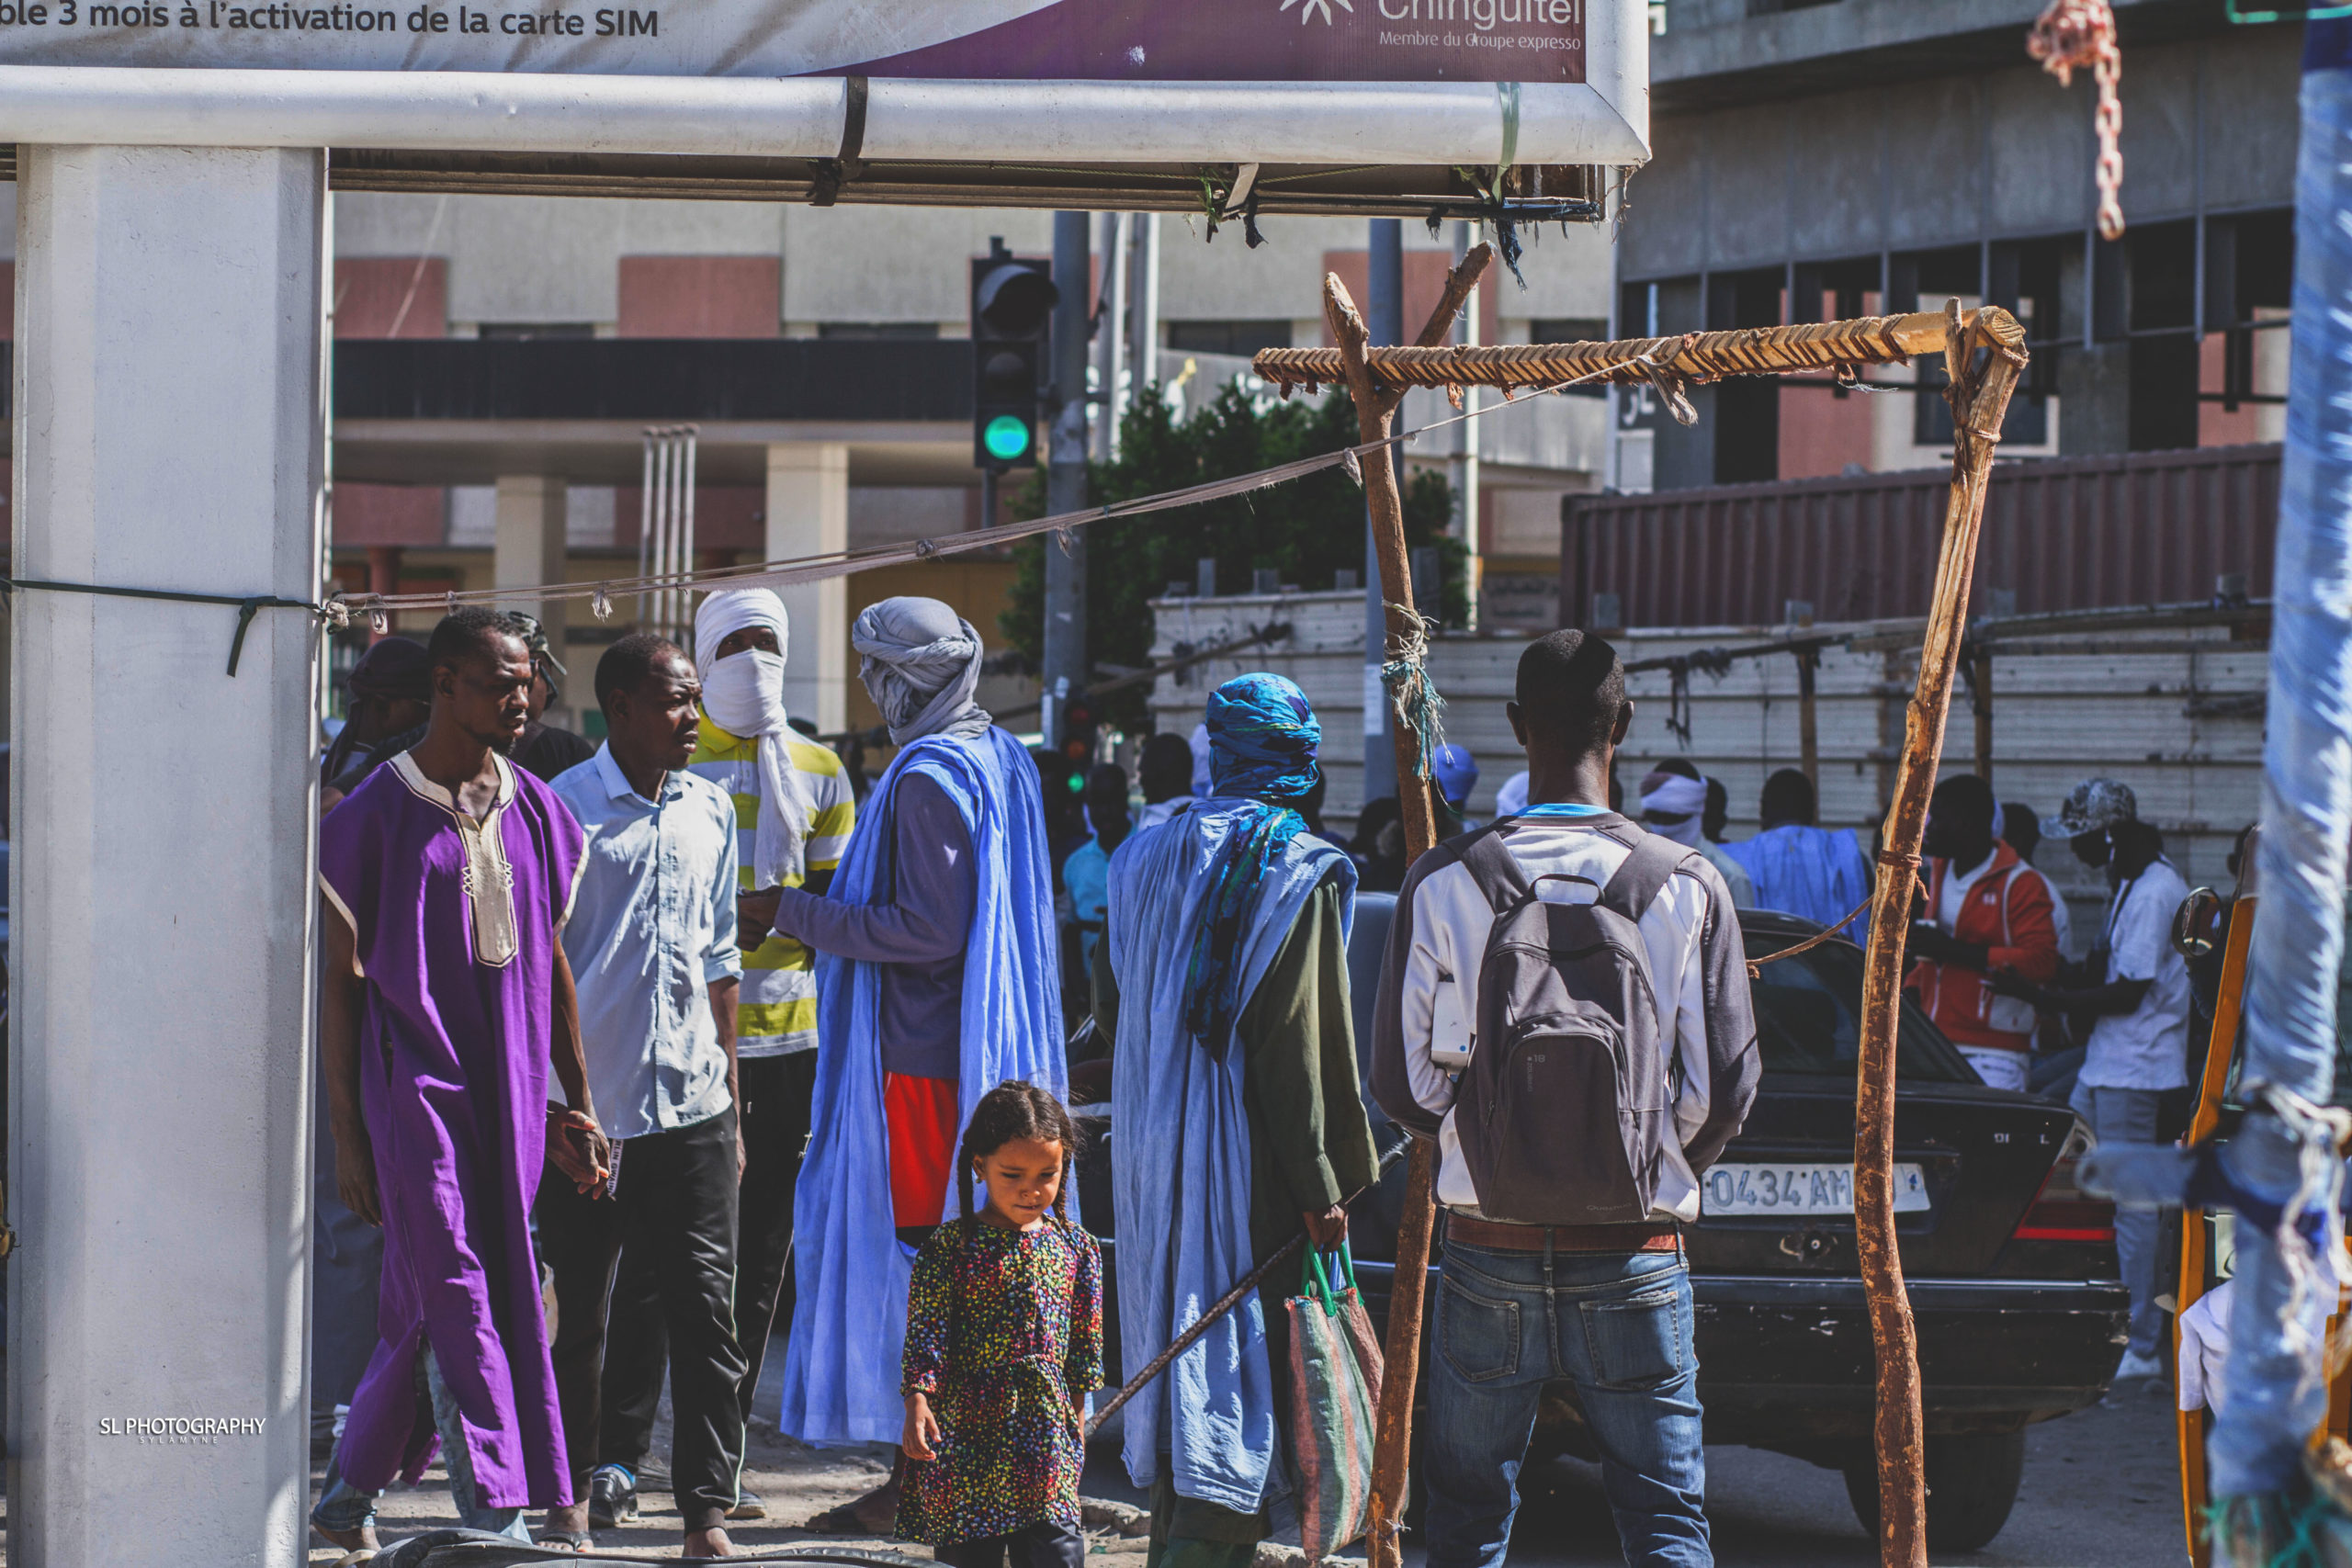 Centre ville de Nouakchott, 03/04/2020 Crédit photo: Lamine Sy